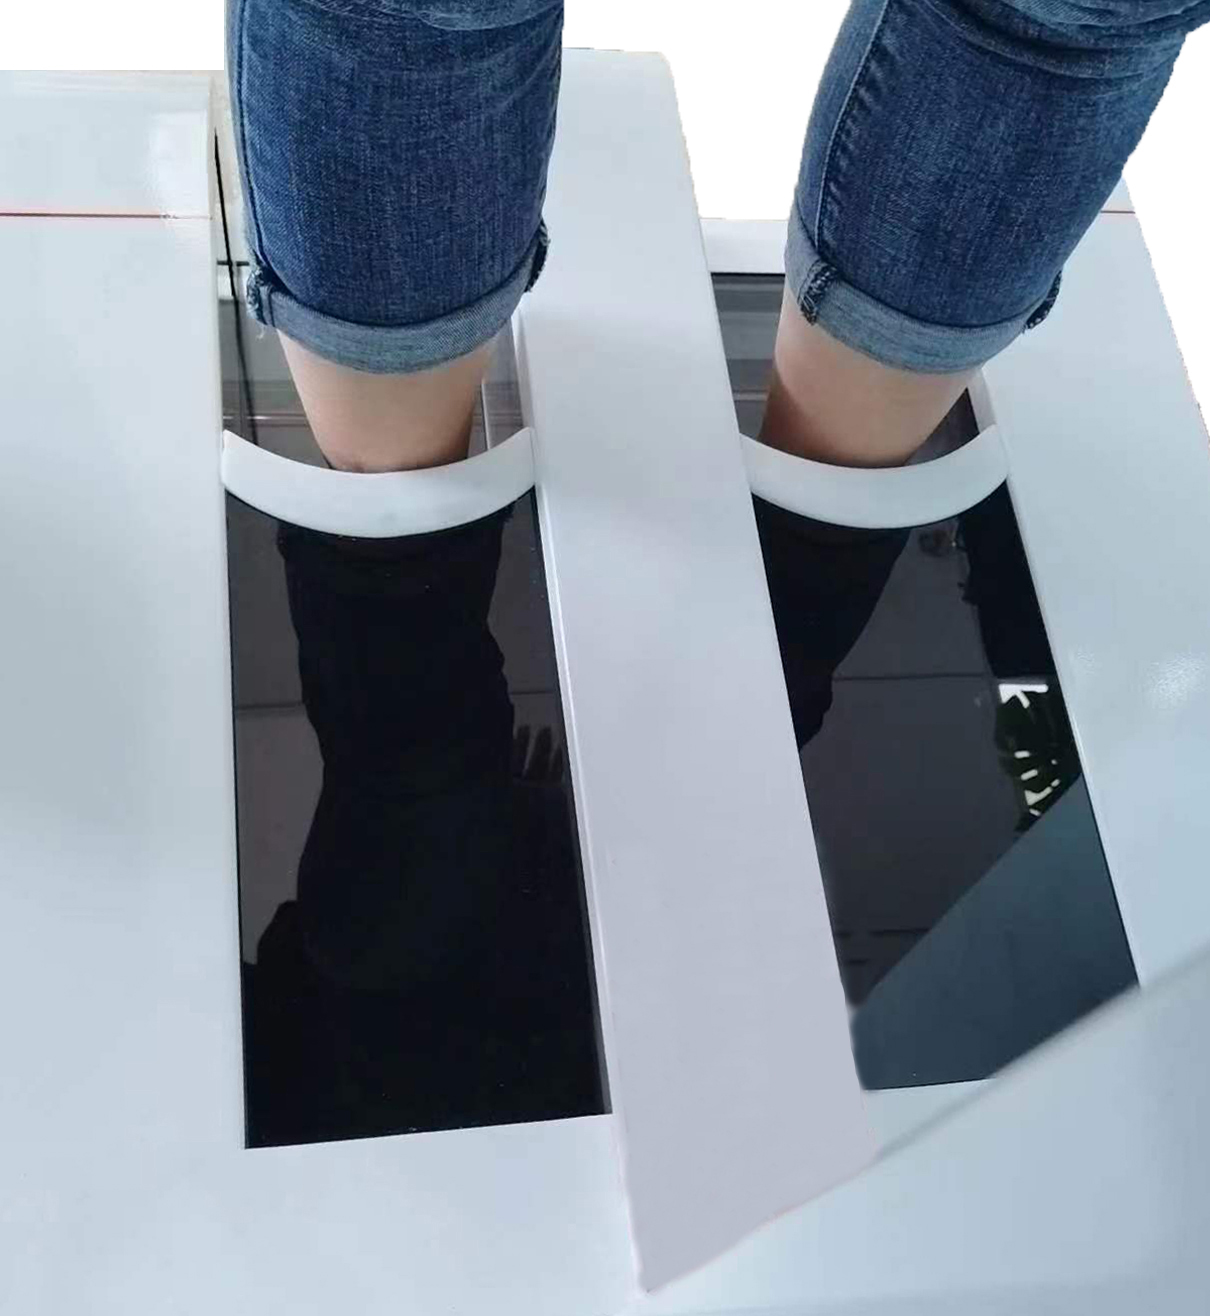 三維足部掃描儀可以在醫療領域中的多個方面進行應用，  以下介紹幾種常見的應用：  1. 足部疾病診斷和治療。三維足部掃描儀可以通過掃描足部并生成高精度的三維模型，幫助醫生全面了解患者的足部狀況，并進行